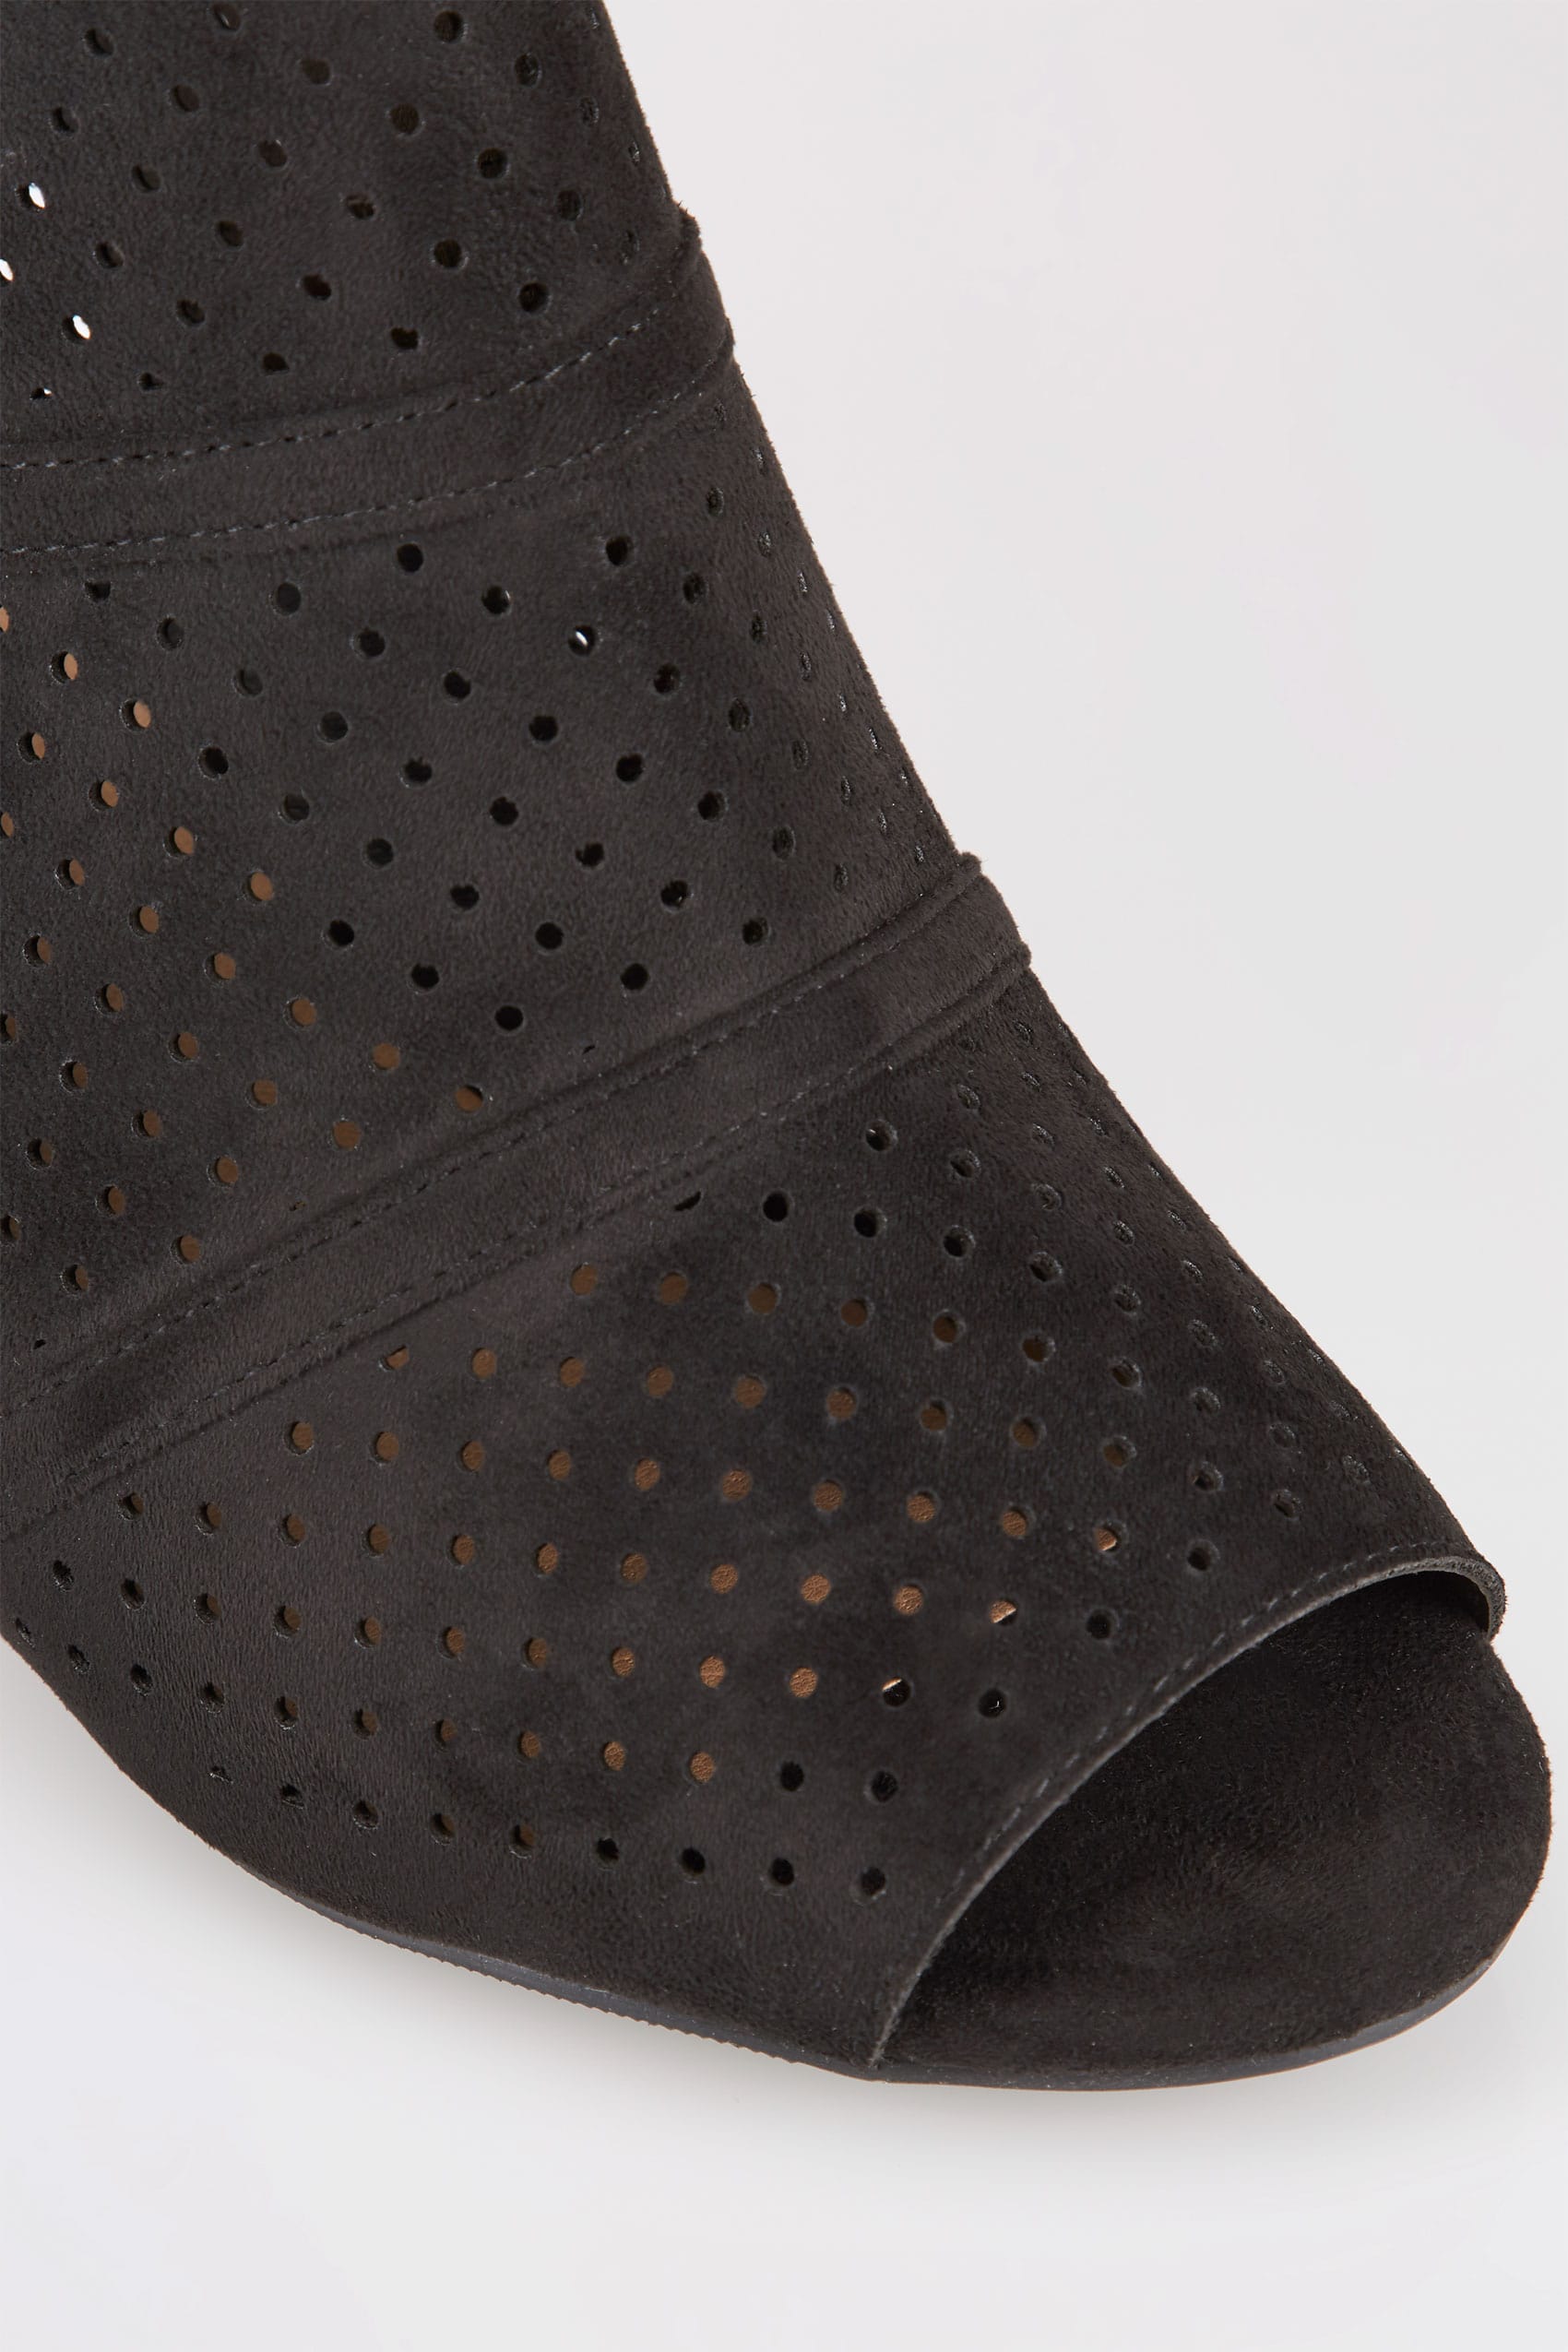 Black Laser Cut Sandals With Block Heel In Eee Fit